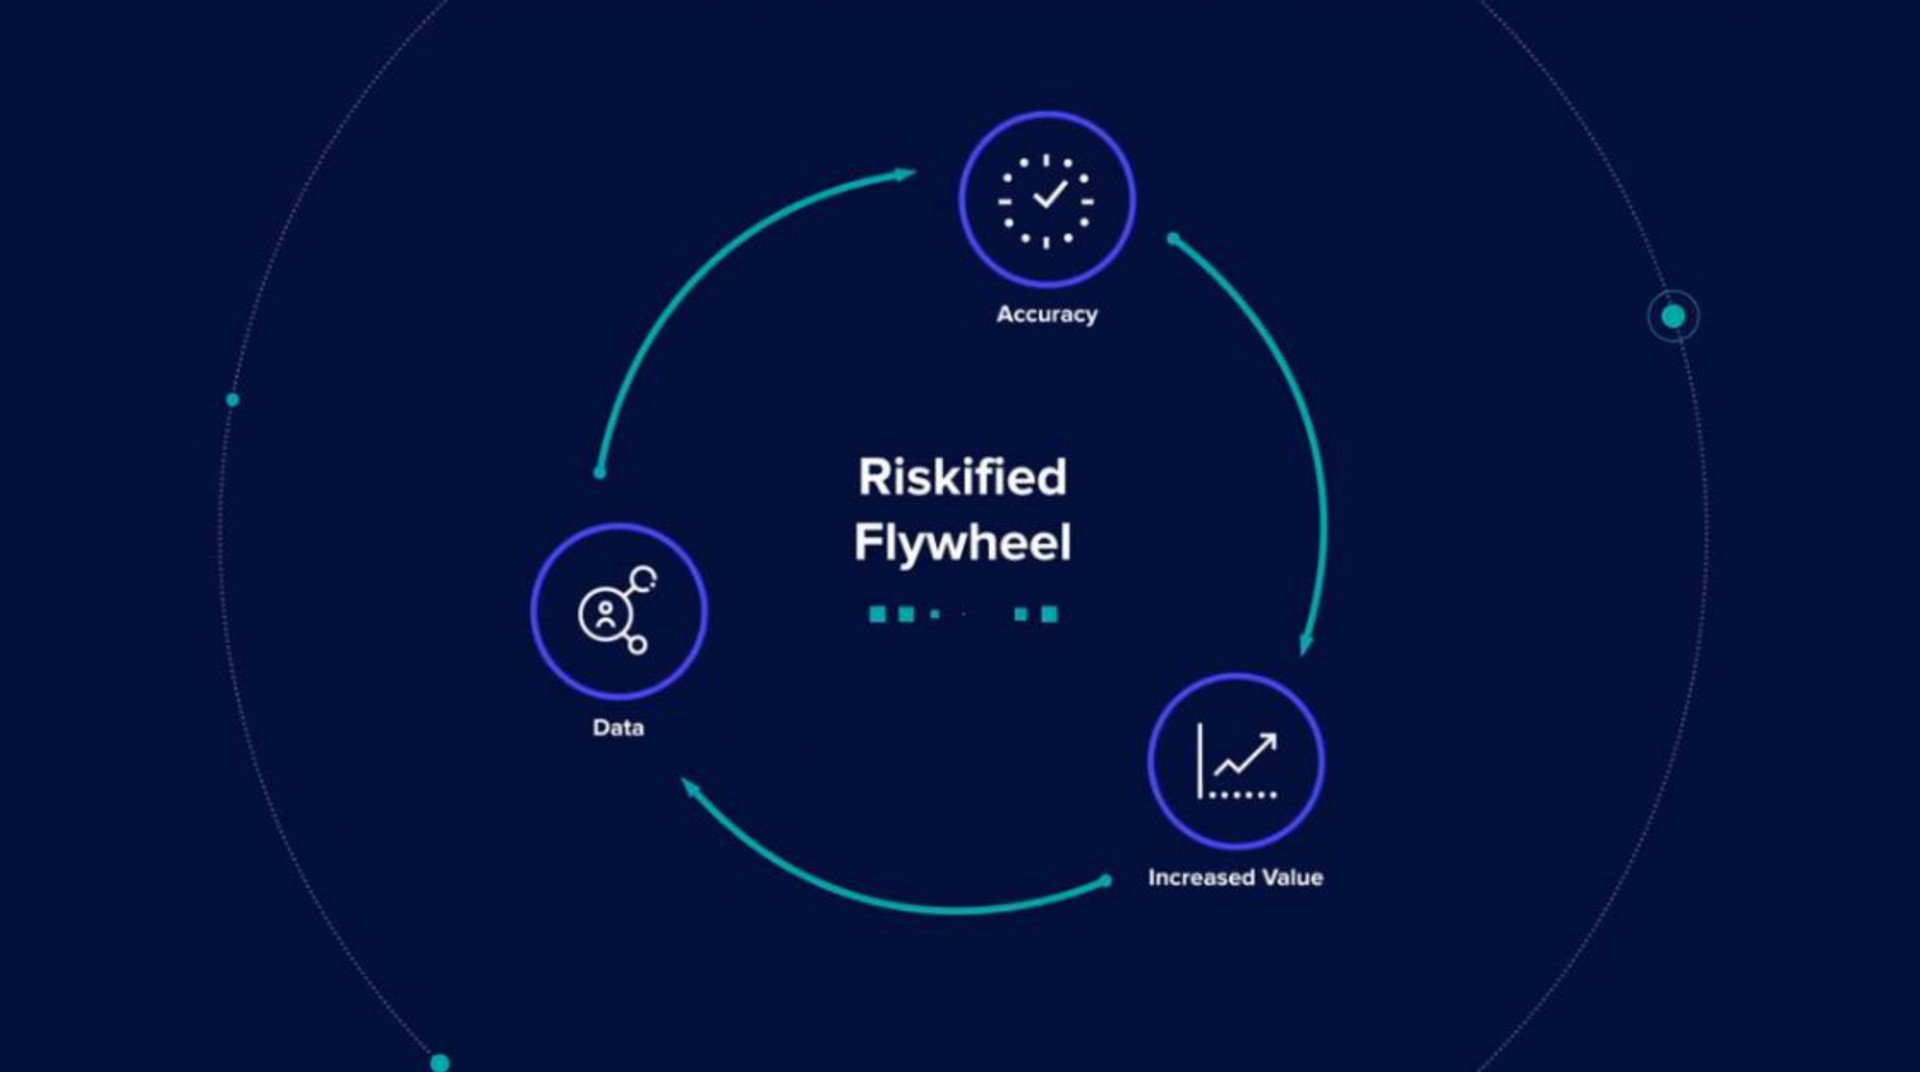 flywheel | Riskified